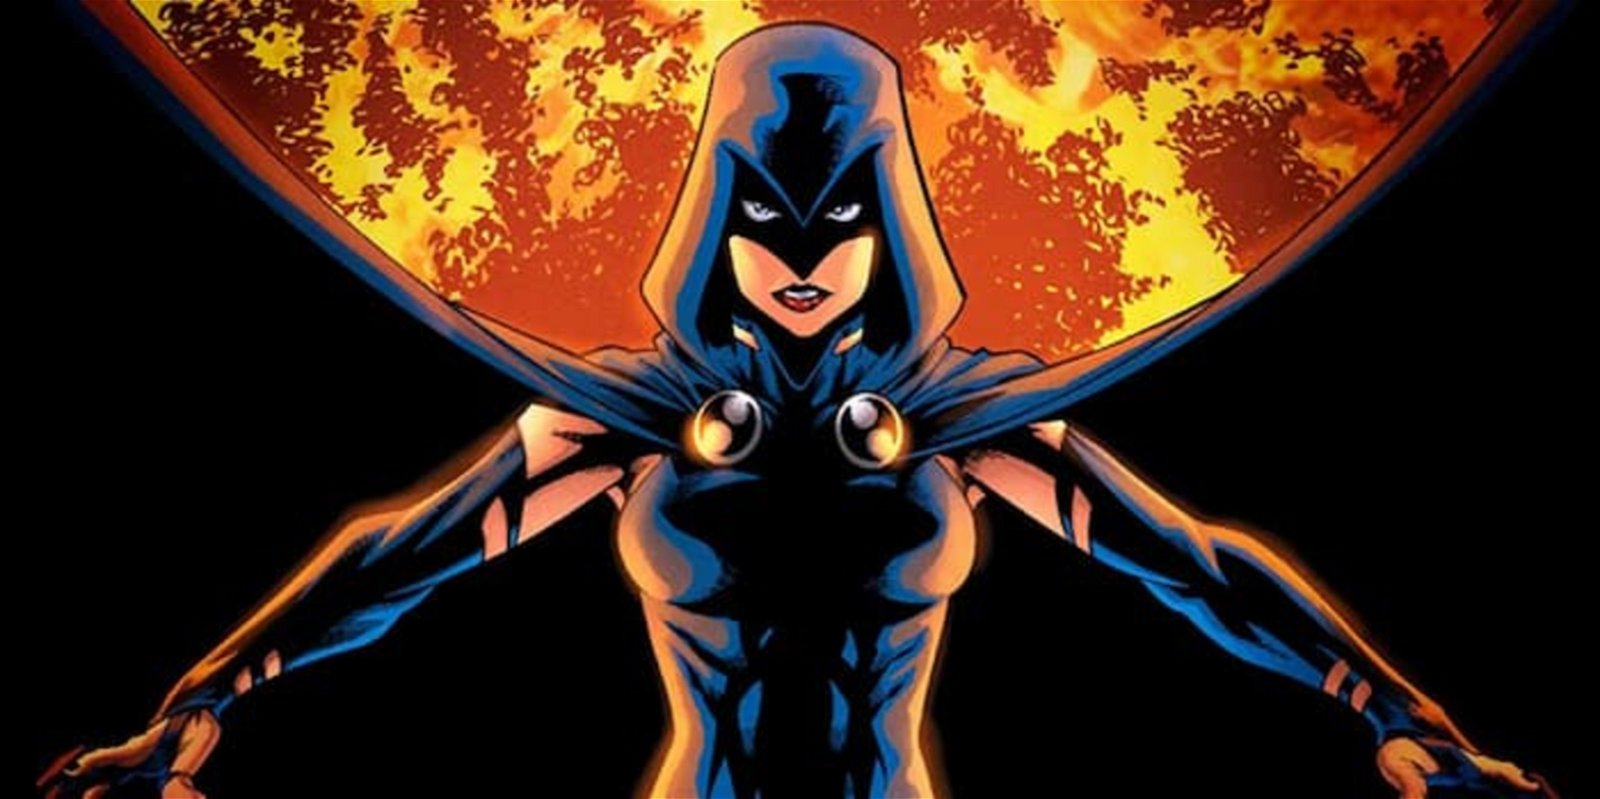 Raven es la hija del demonio Trigon y una humana, convirtiéndola en uno de los personajes más poderosos de DC